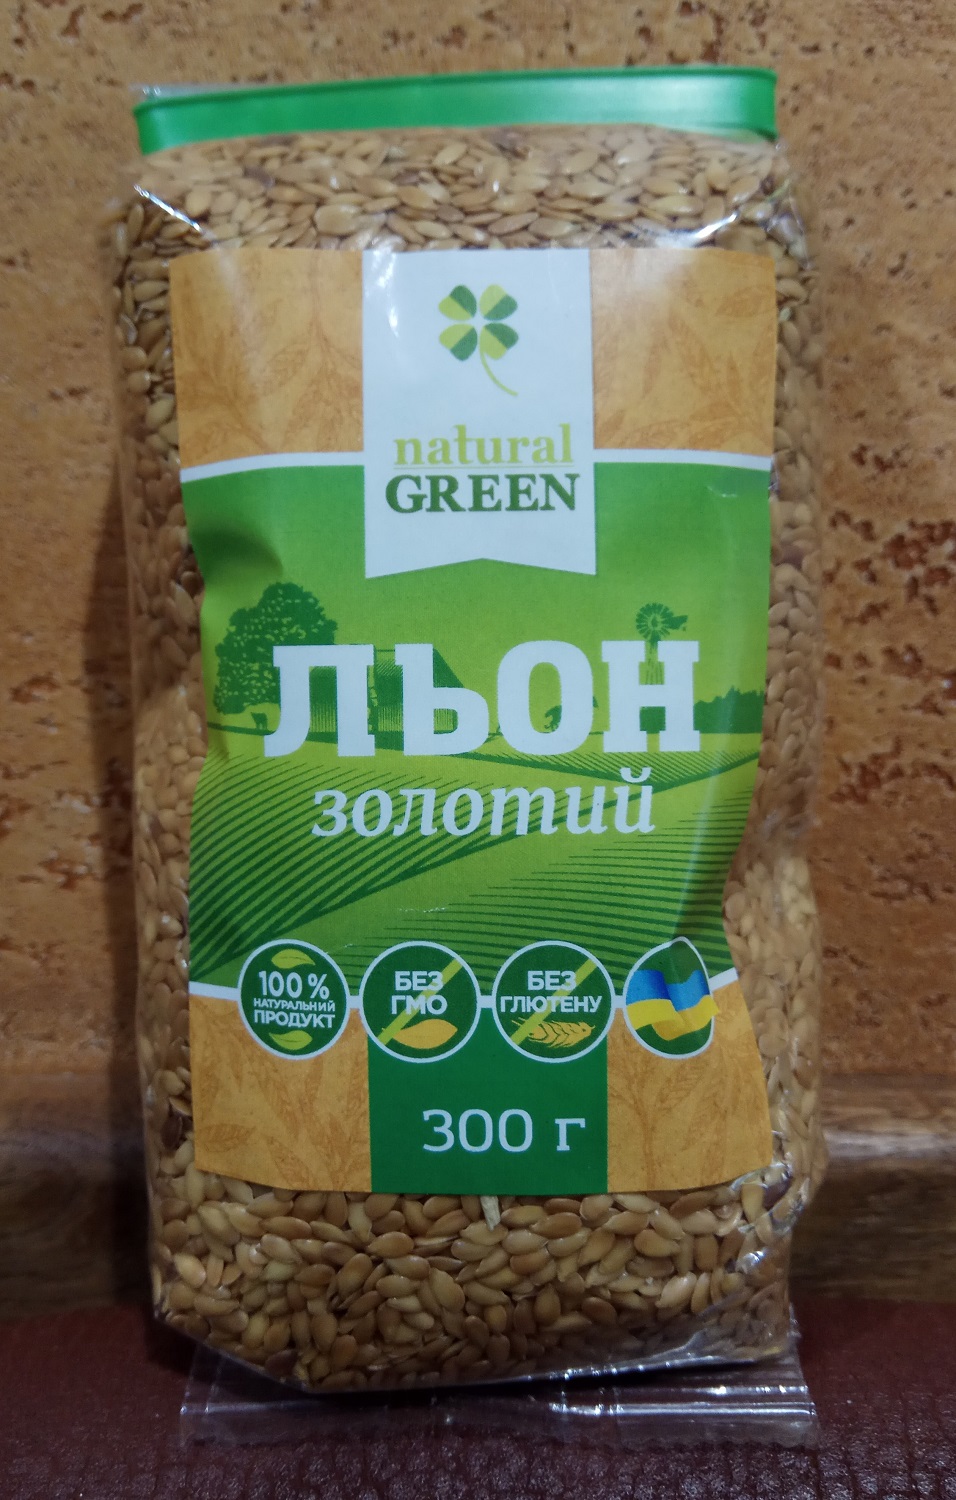 Лен золотой семена - белок, клетчатка, Омега 3, защита, ЖКТ, очищение, похудение, польза, 300 гр. Украина